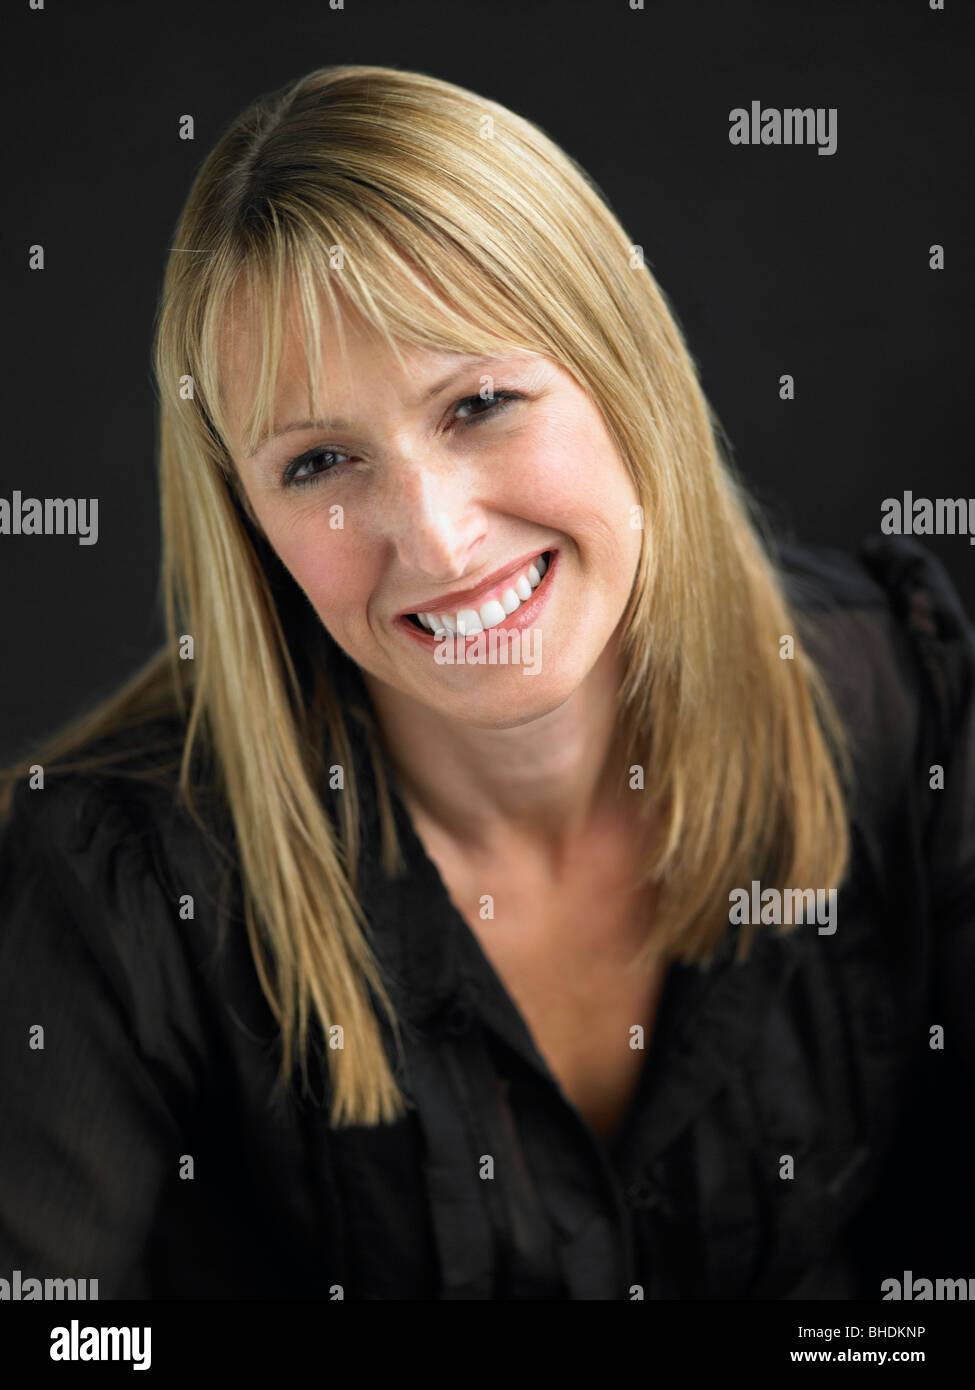 Studio-Porträt der jungen Frau vor schwarzem Hintergrund Stockfoto